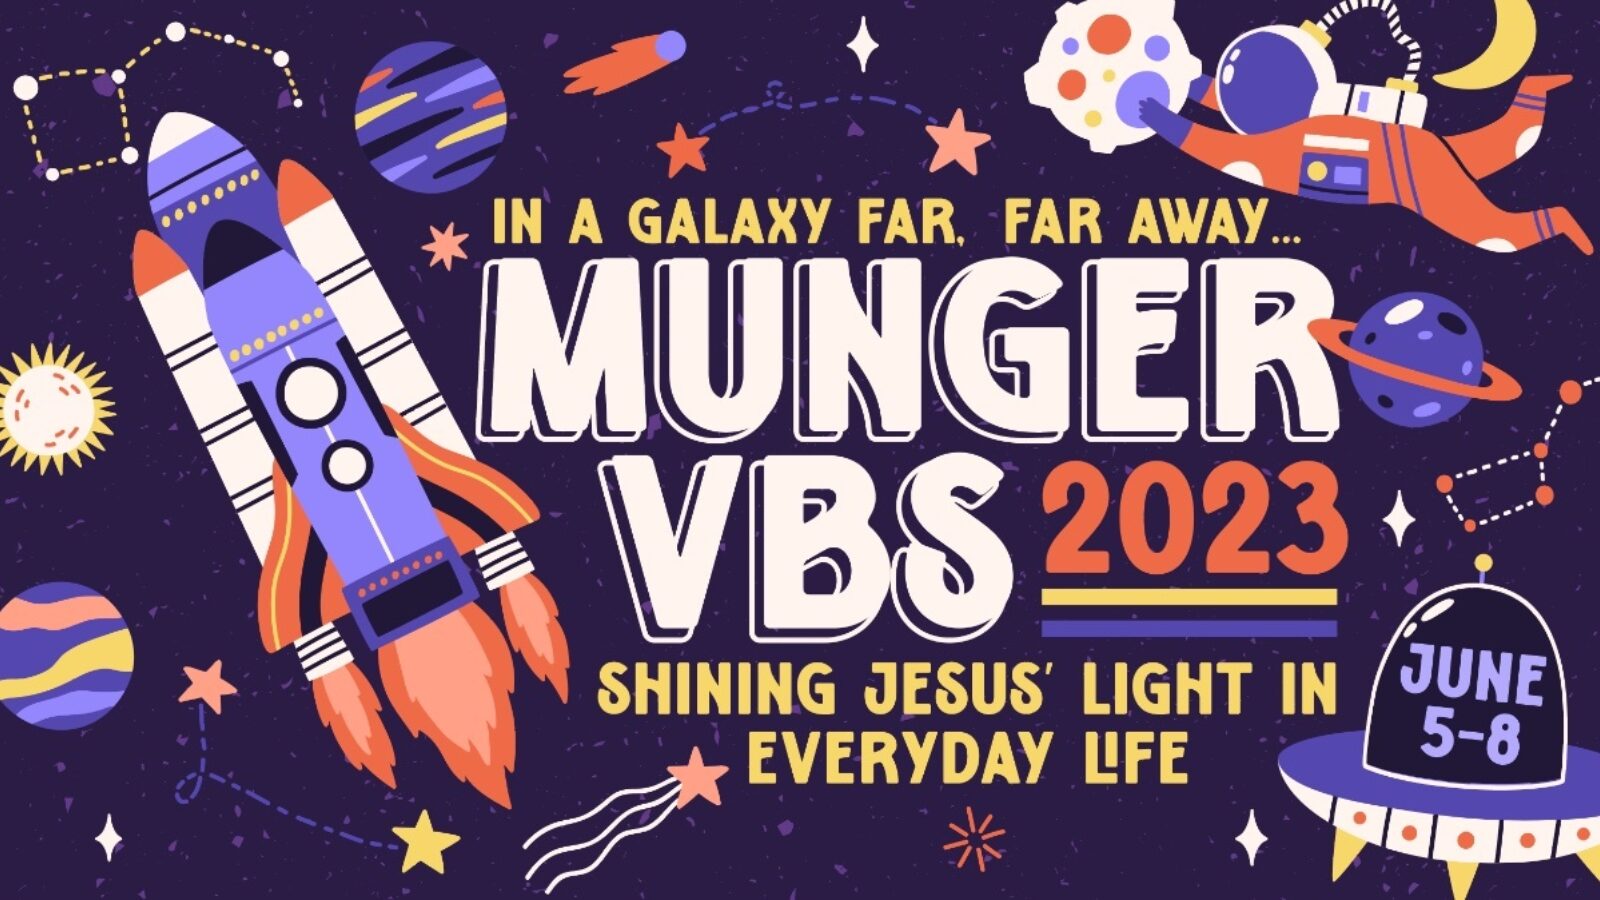 Munger VBS 2023